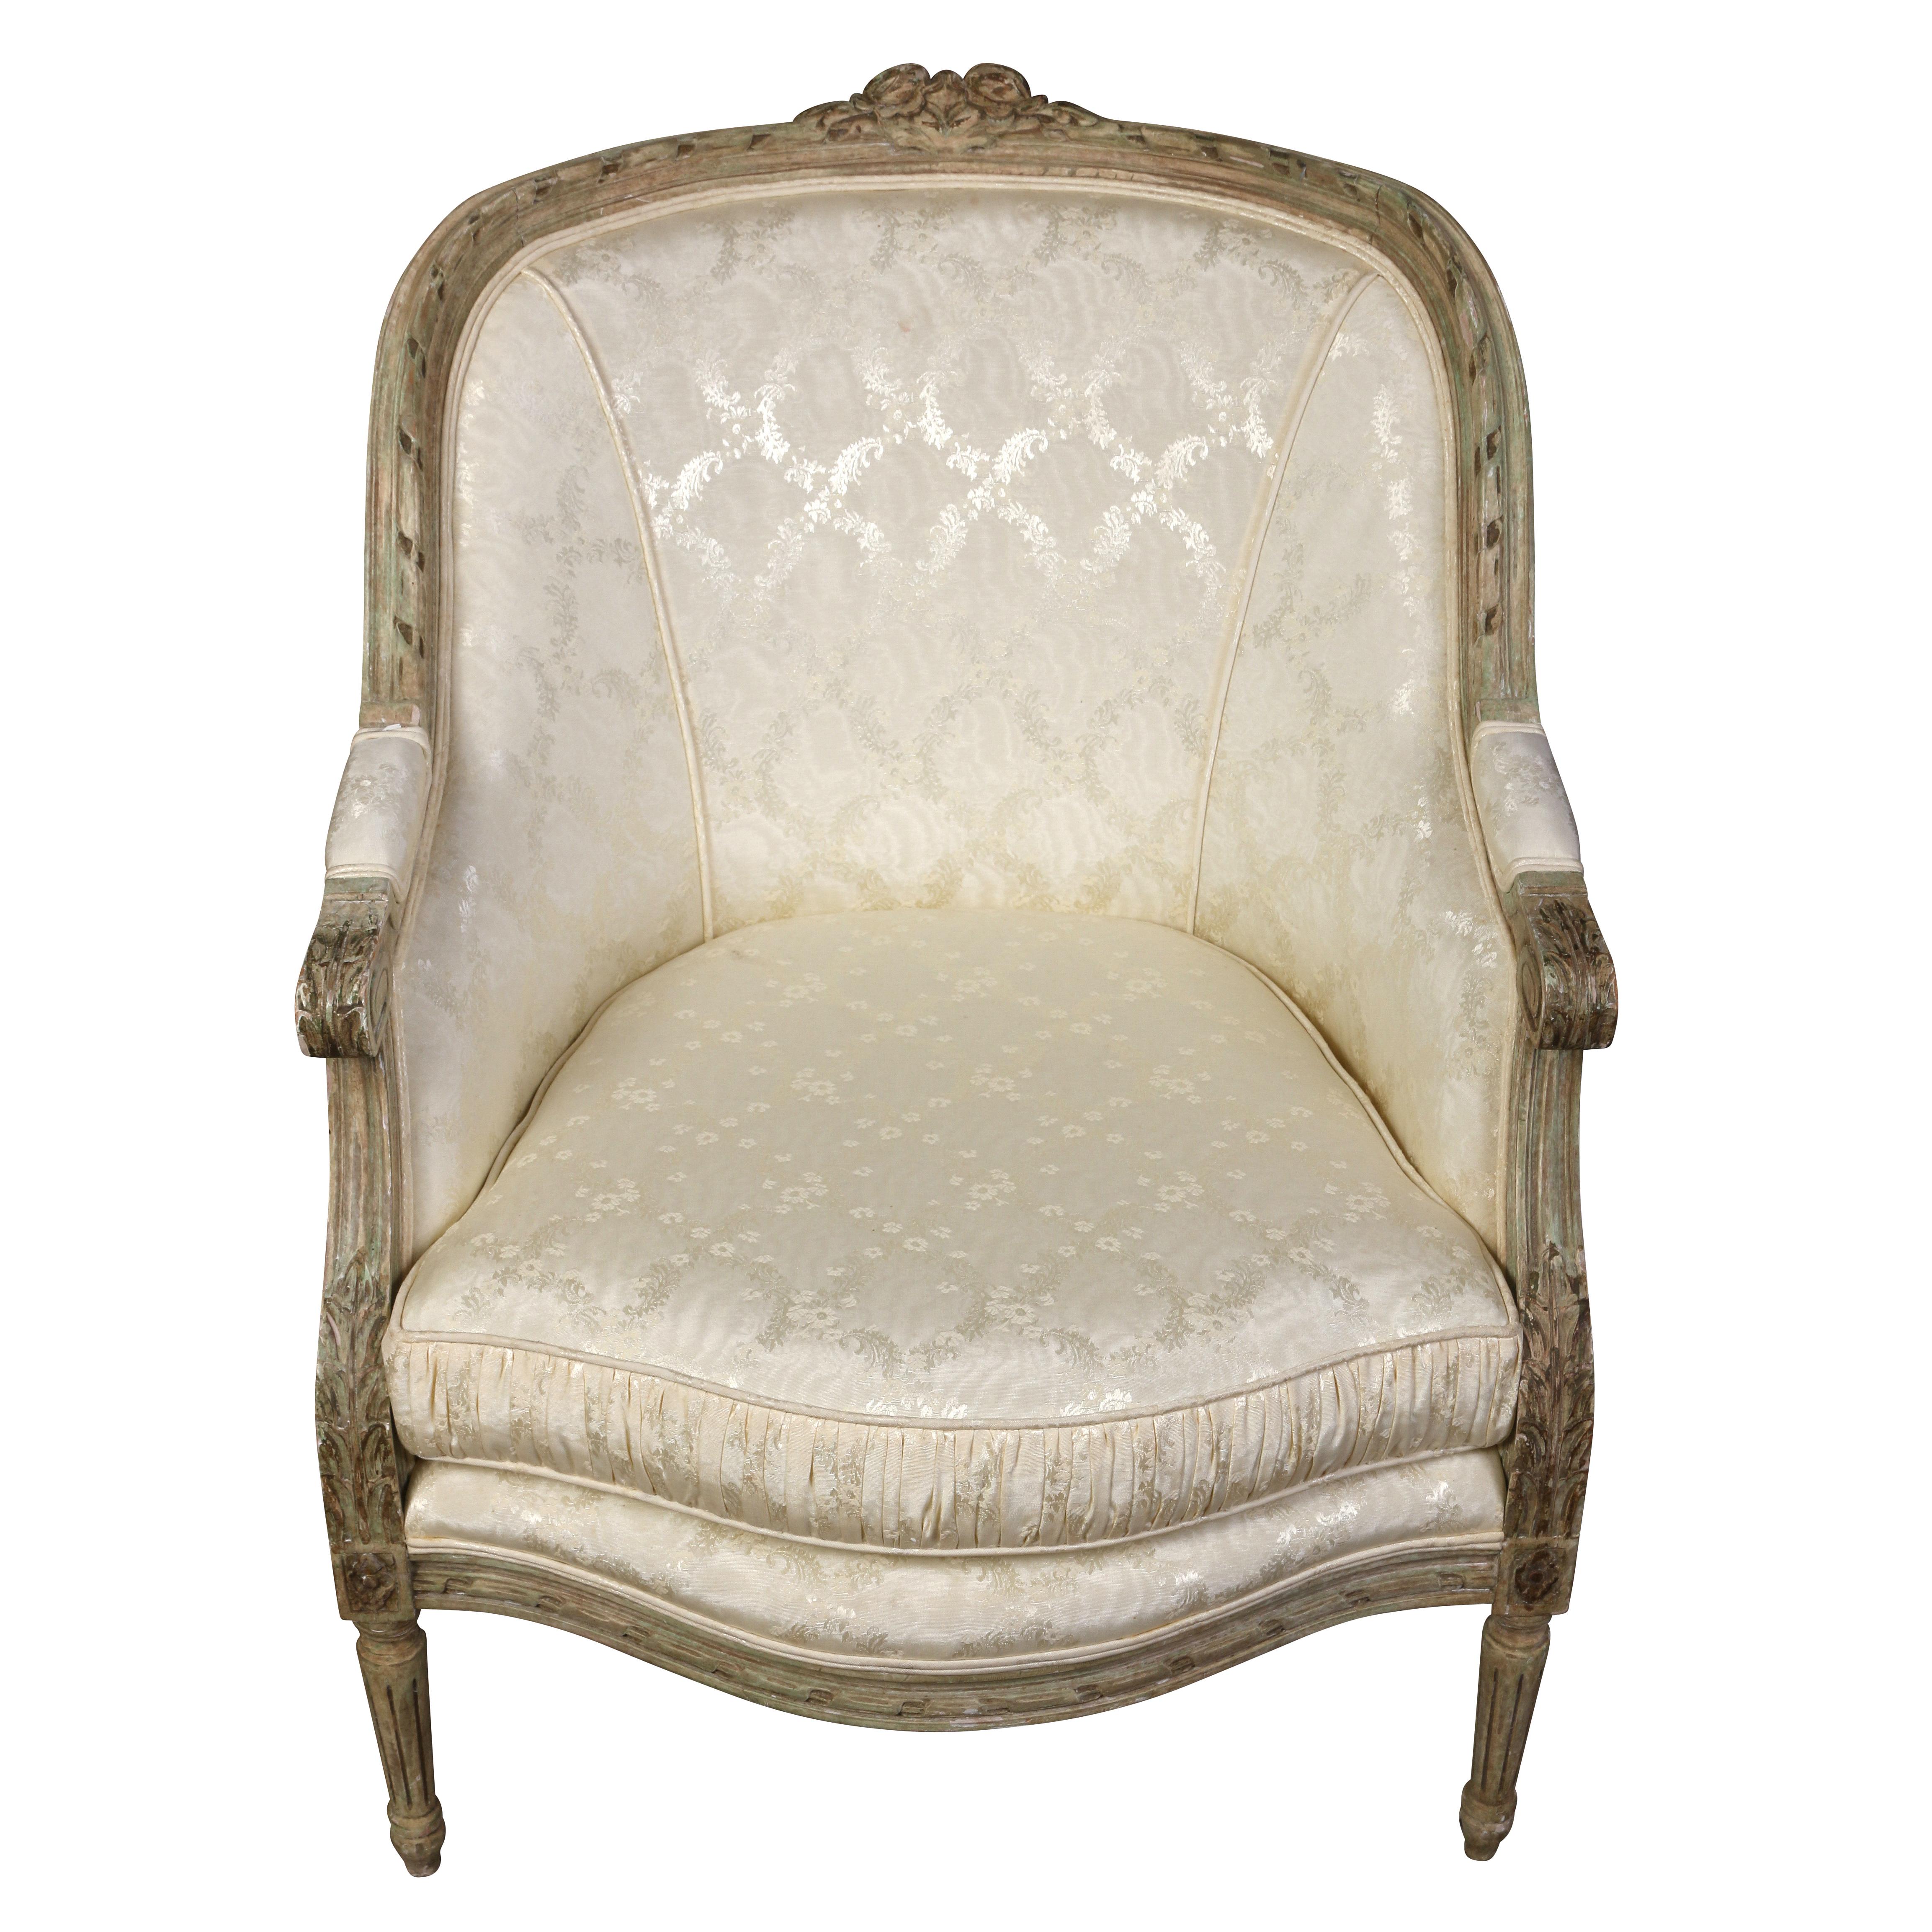 Paire de bergères peintes de style Louis XVI avec un dossier arrondi et serré et un coussin d'assise lâche.  Typique du Louis XVI  Les chaises présentent de jolis détails sculptés sur le plateau et le tablier, ainsi que des pieds cannelés et effilés.